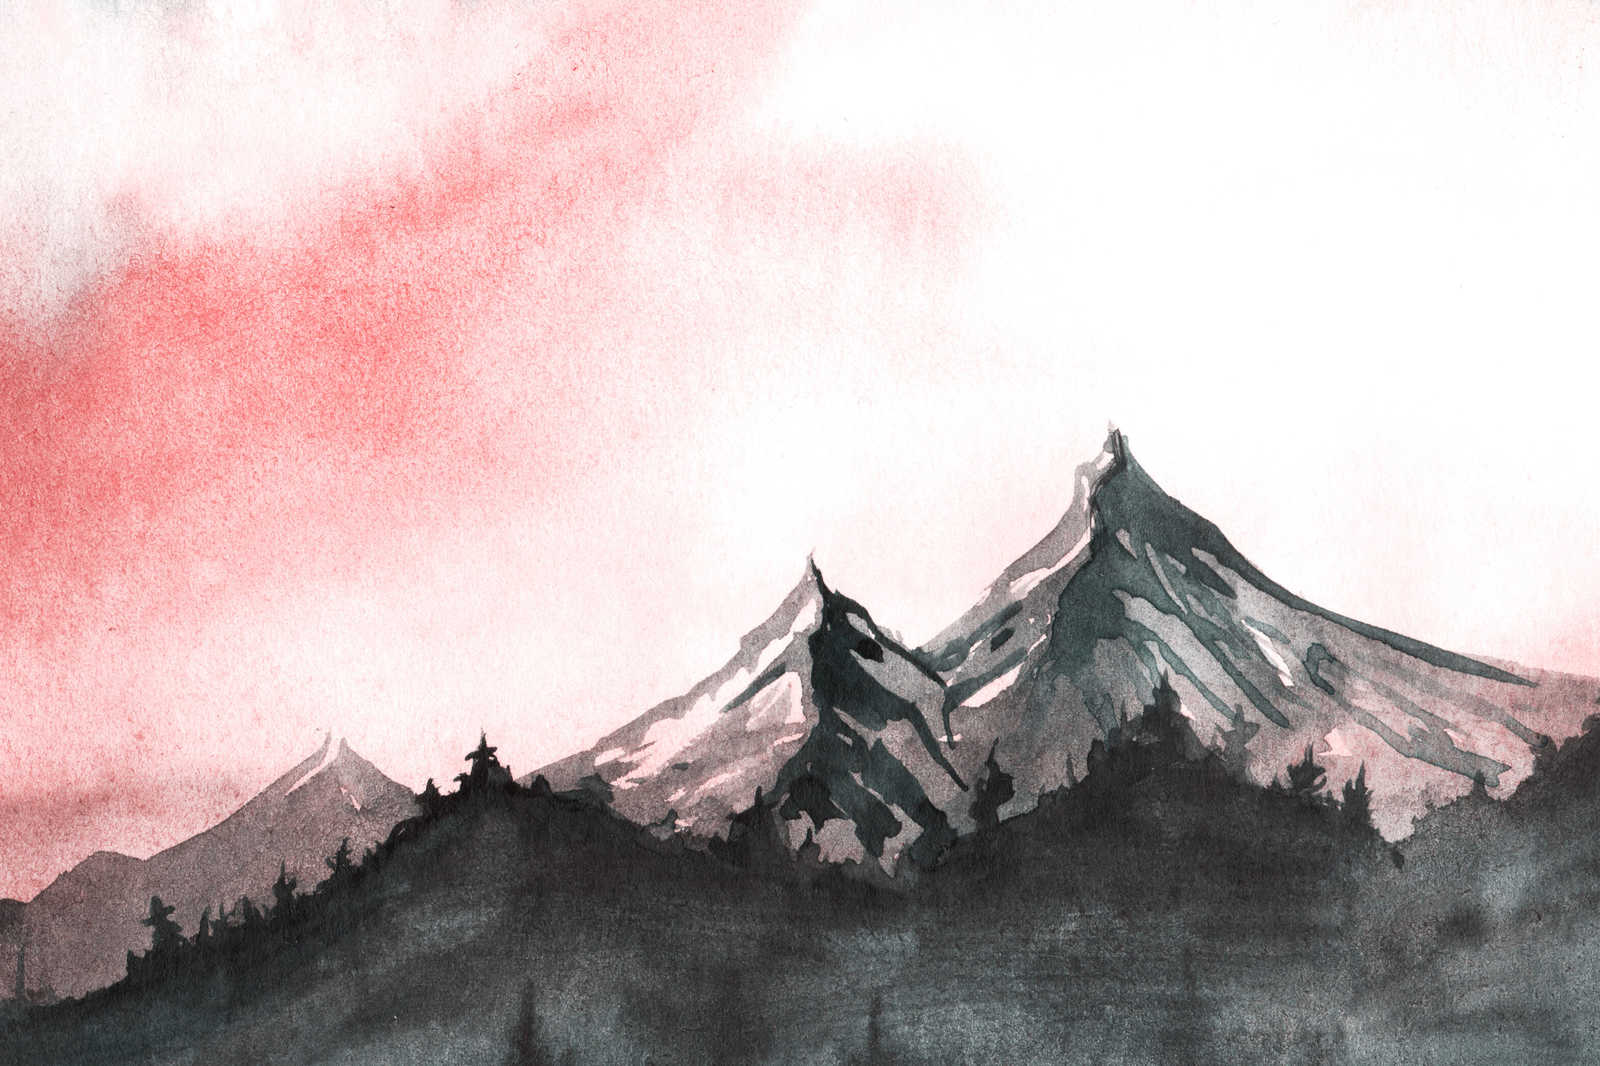             Toile avec paysage de montagne de style aquarelle - 0,90 m x 0,60 m
        